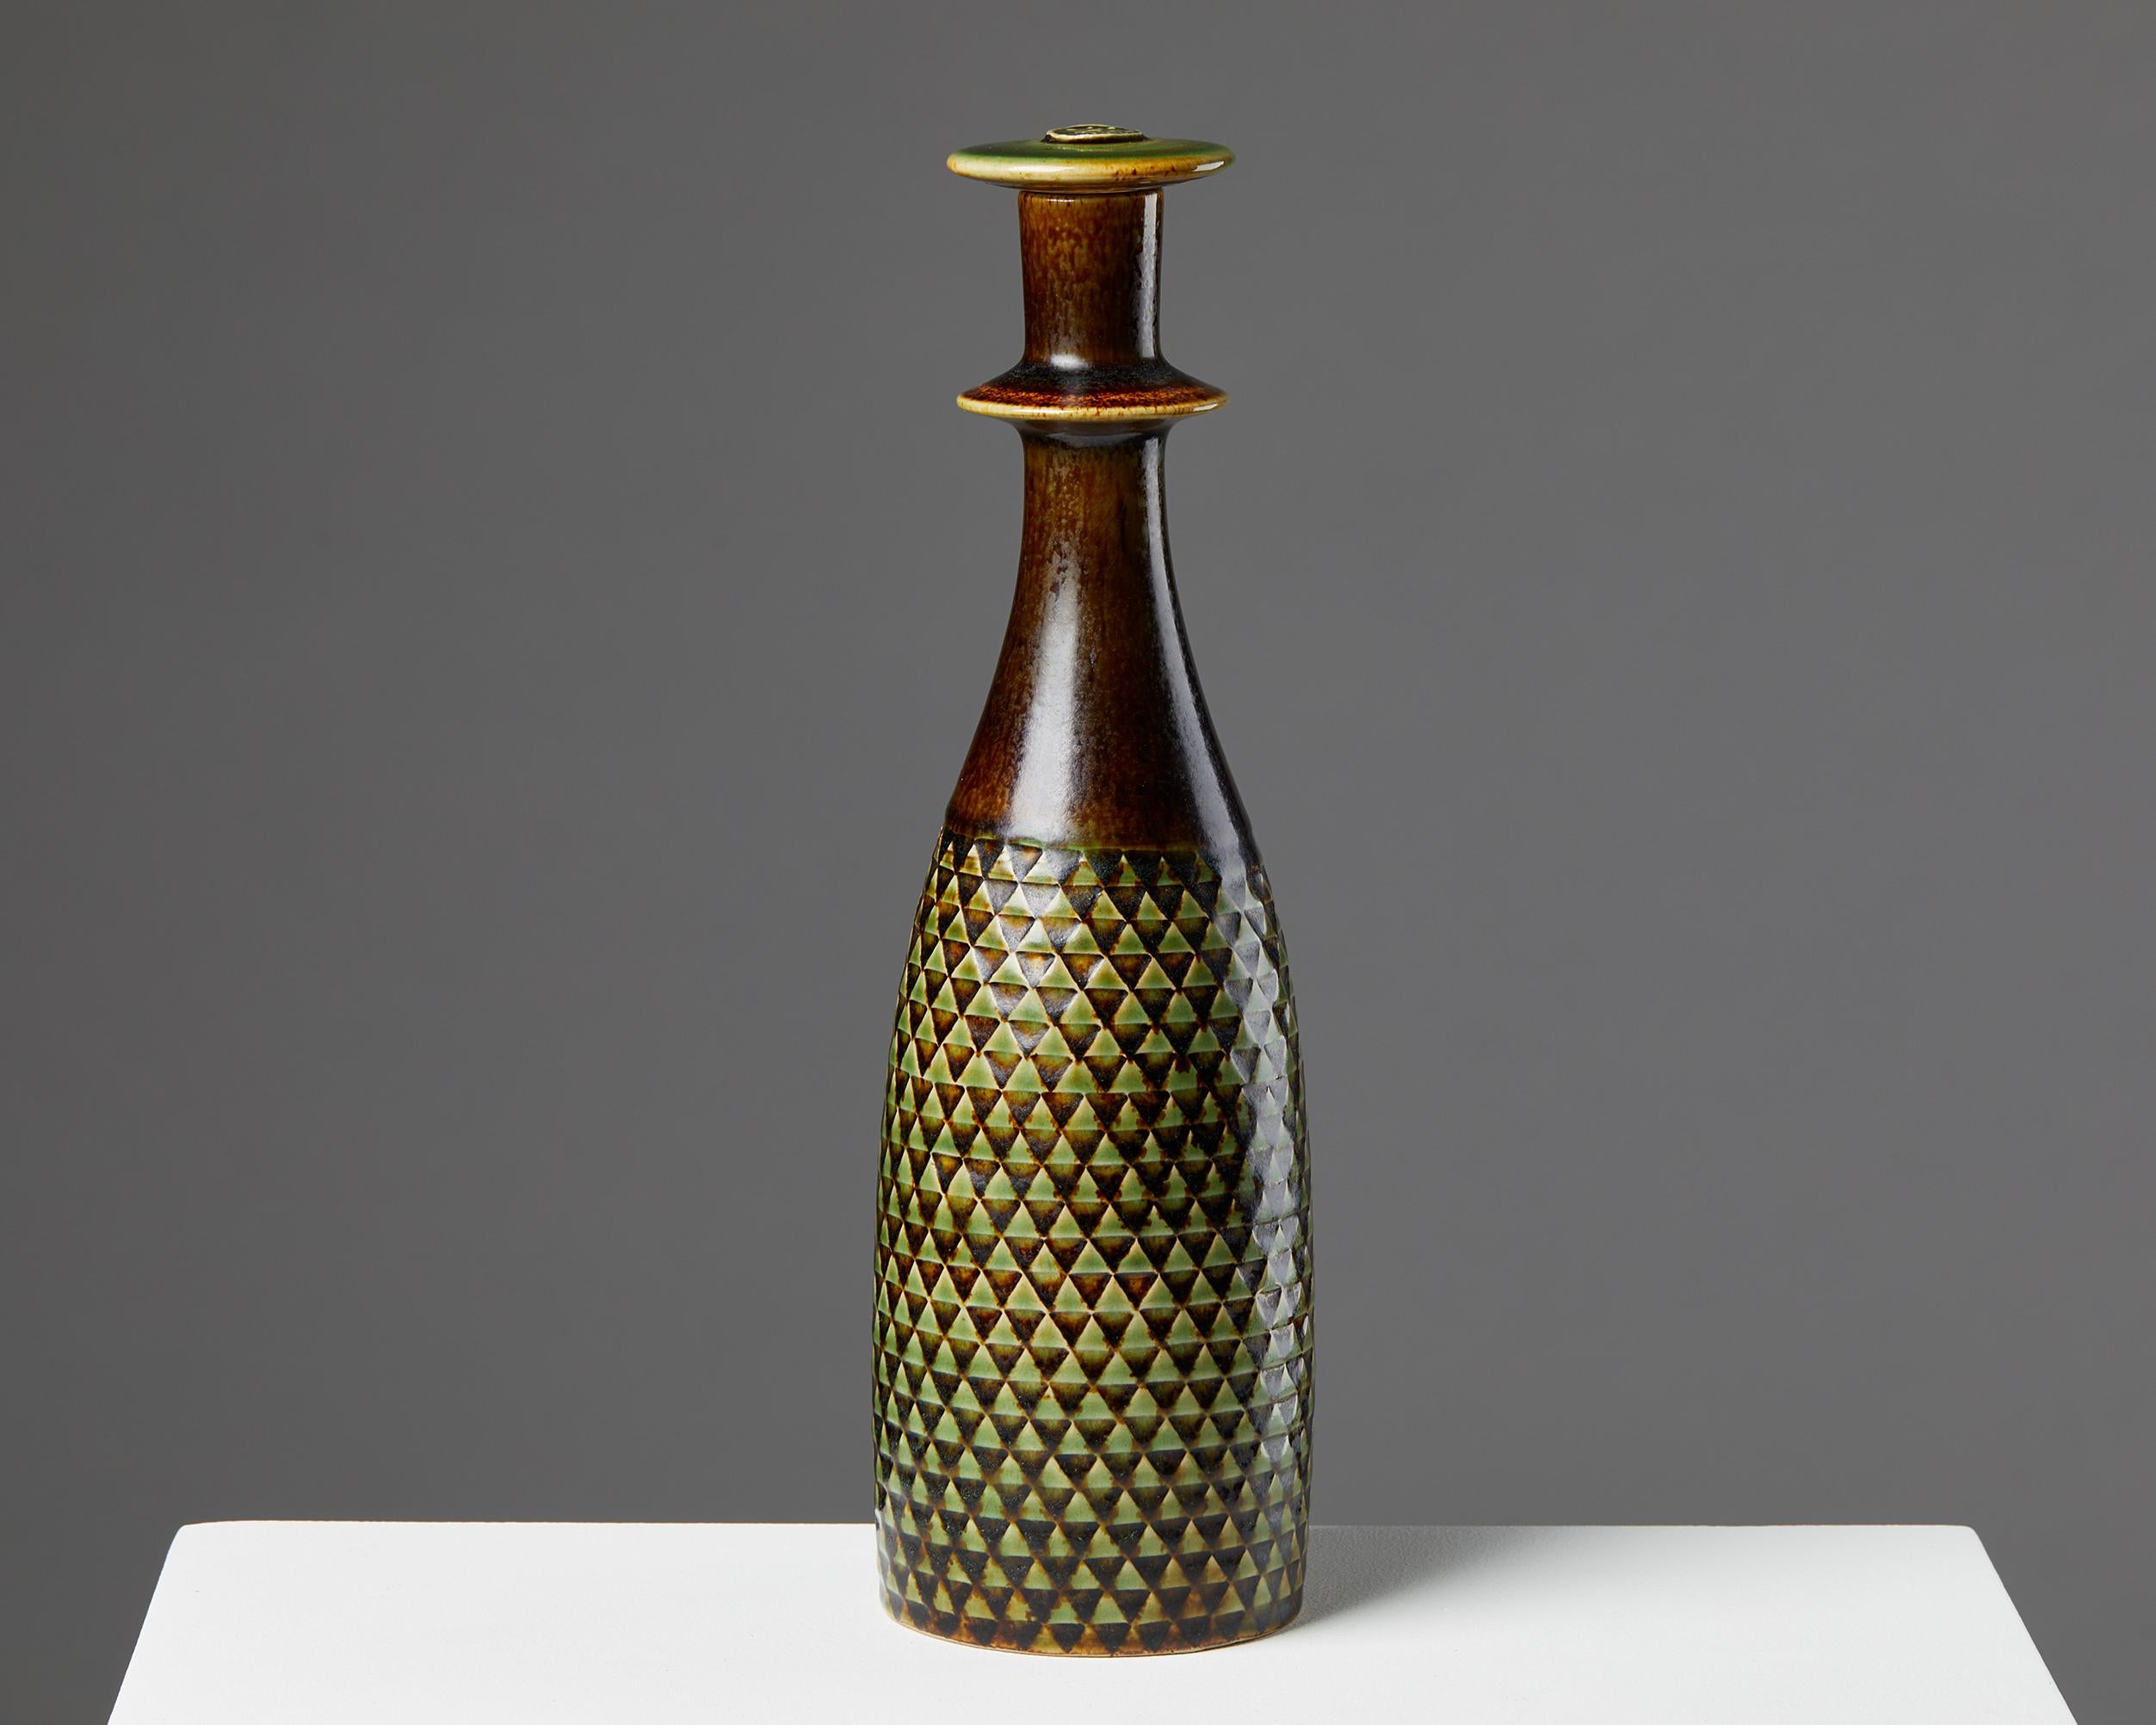 Bottle designed by Stig Lindberg for Gustavsbergs,
Sweden. 1950s.
Stoneware.

Signed.

Measures: H: 30 cm / 11 3/4